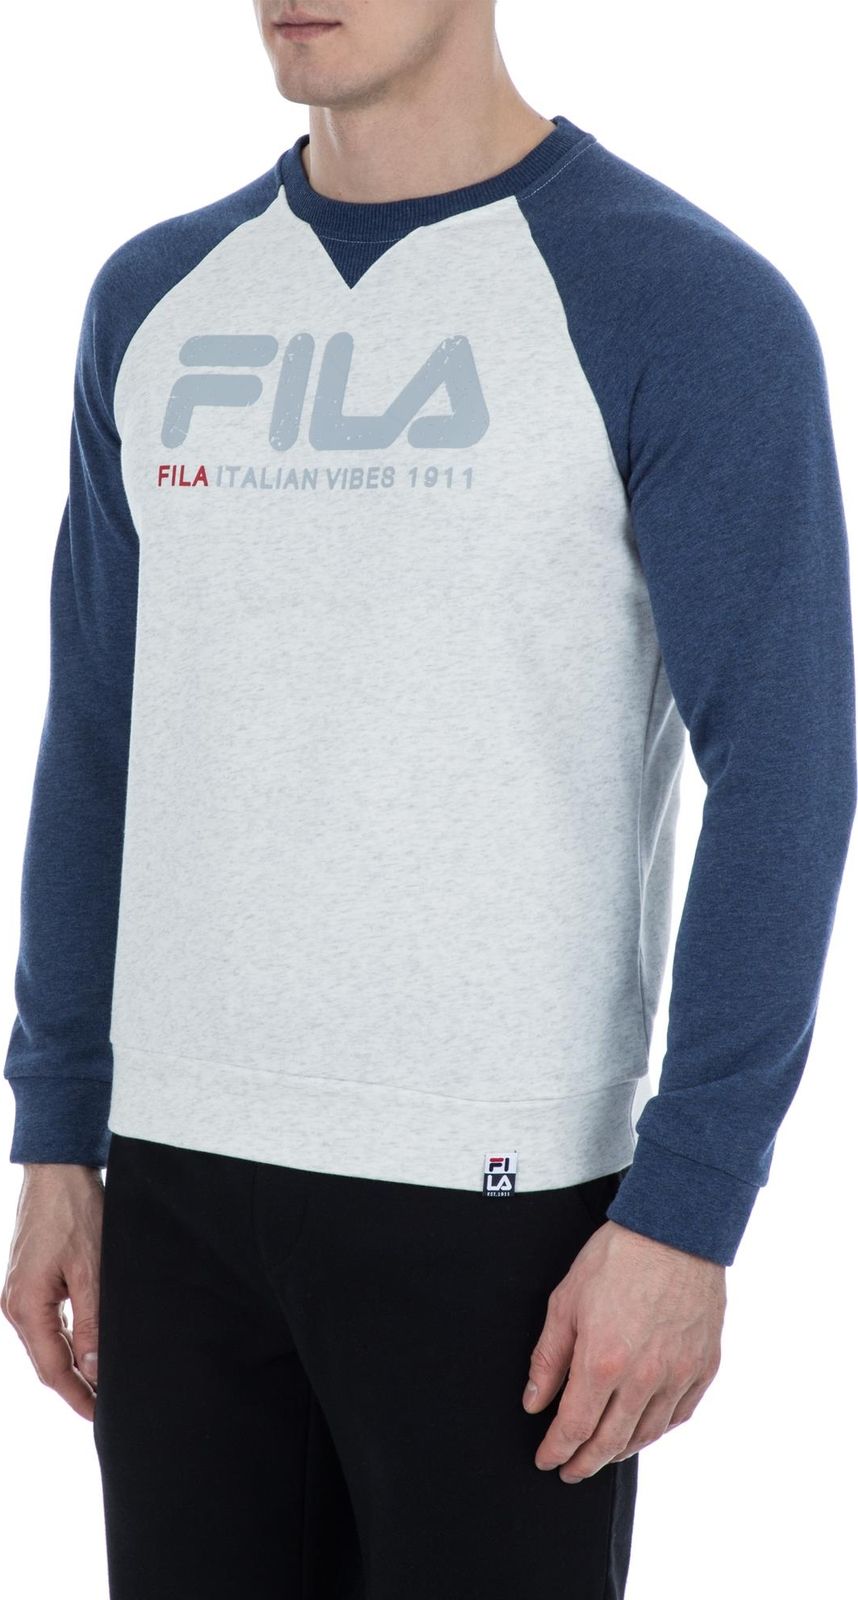   Fila Men's jumper, : -. S19AFLJUM03-1A.  M (48)